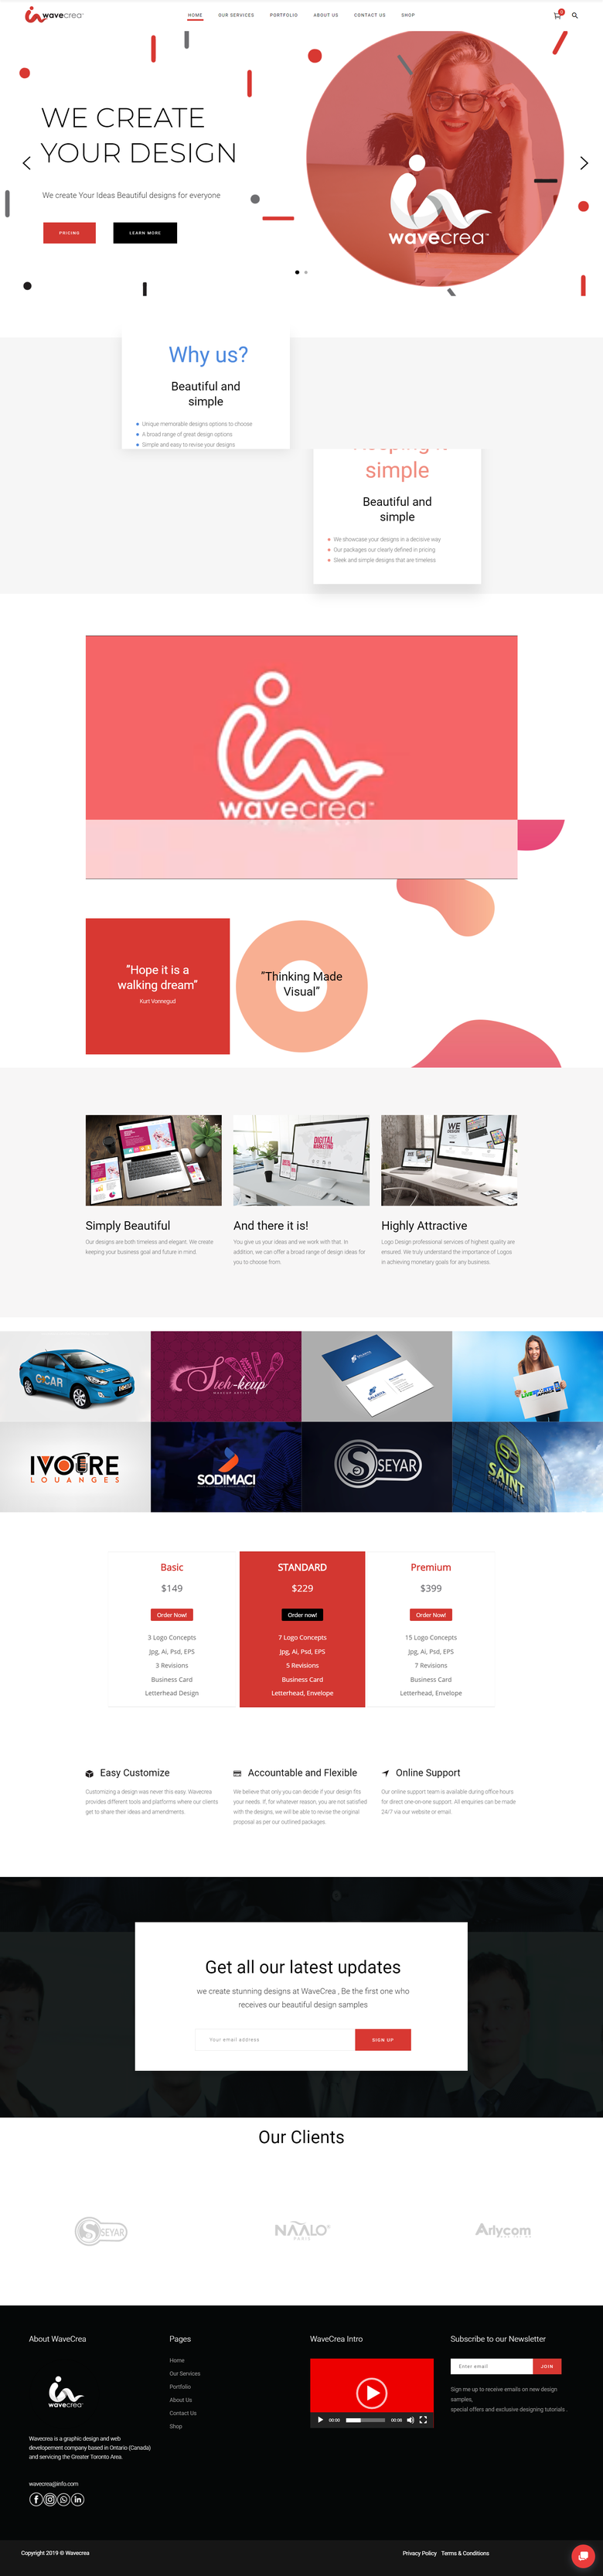 WaveCrea - Graphic Designing Agency